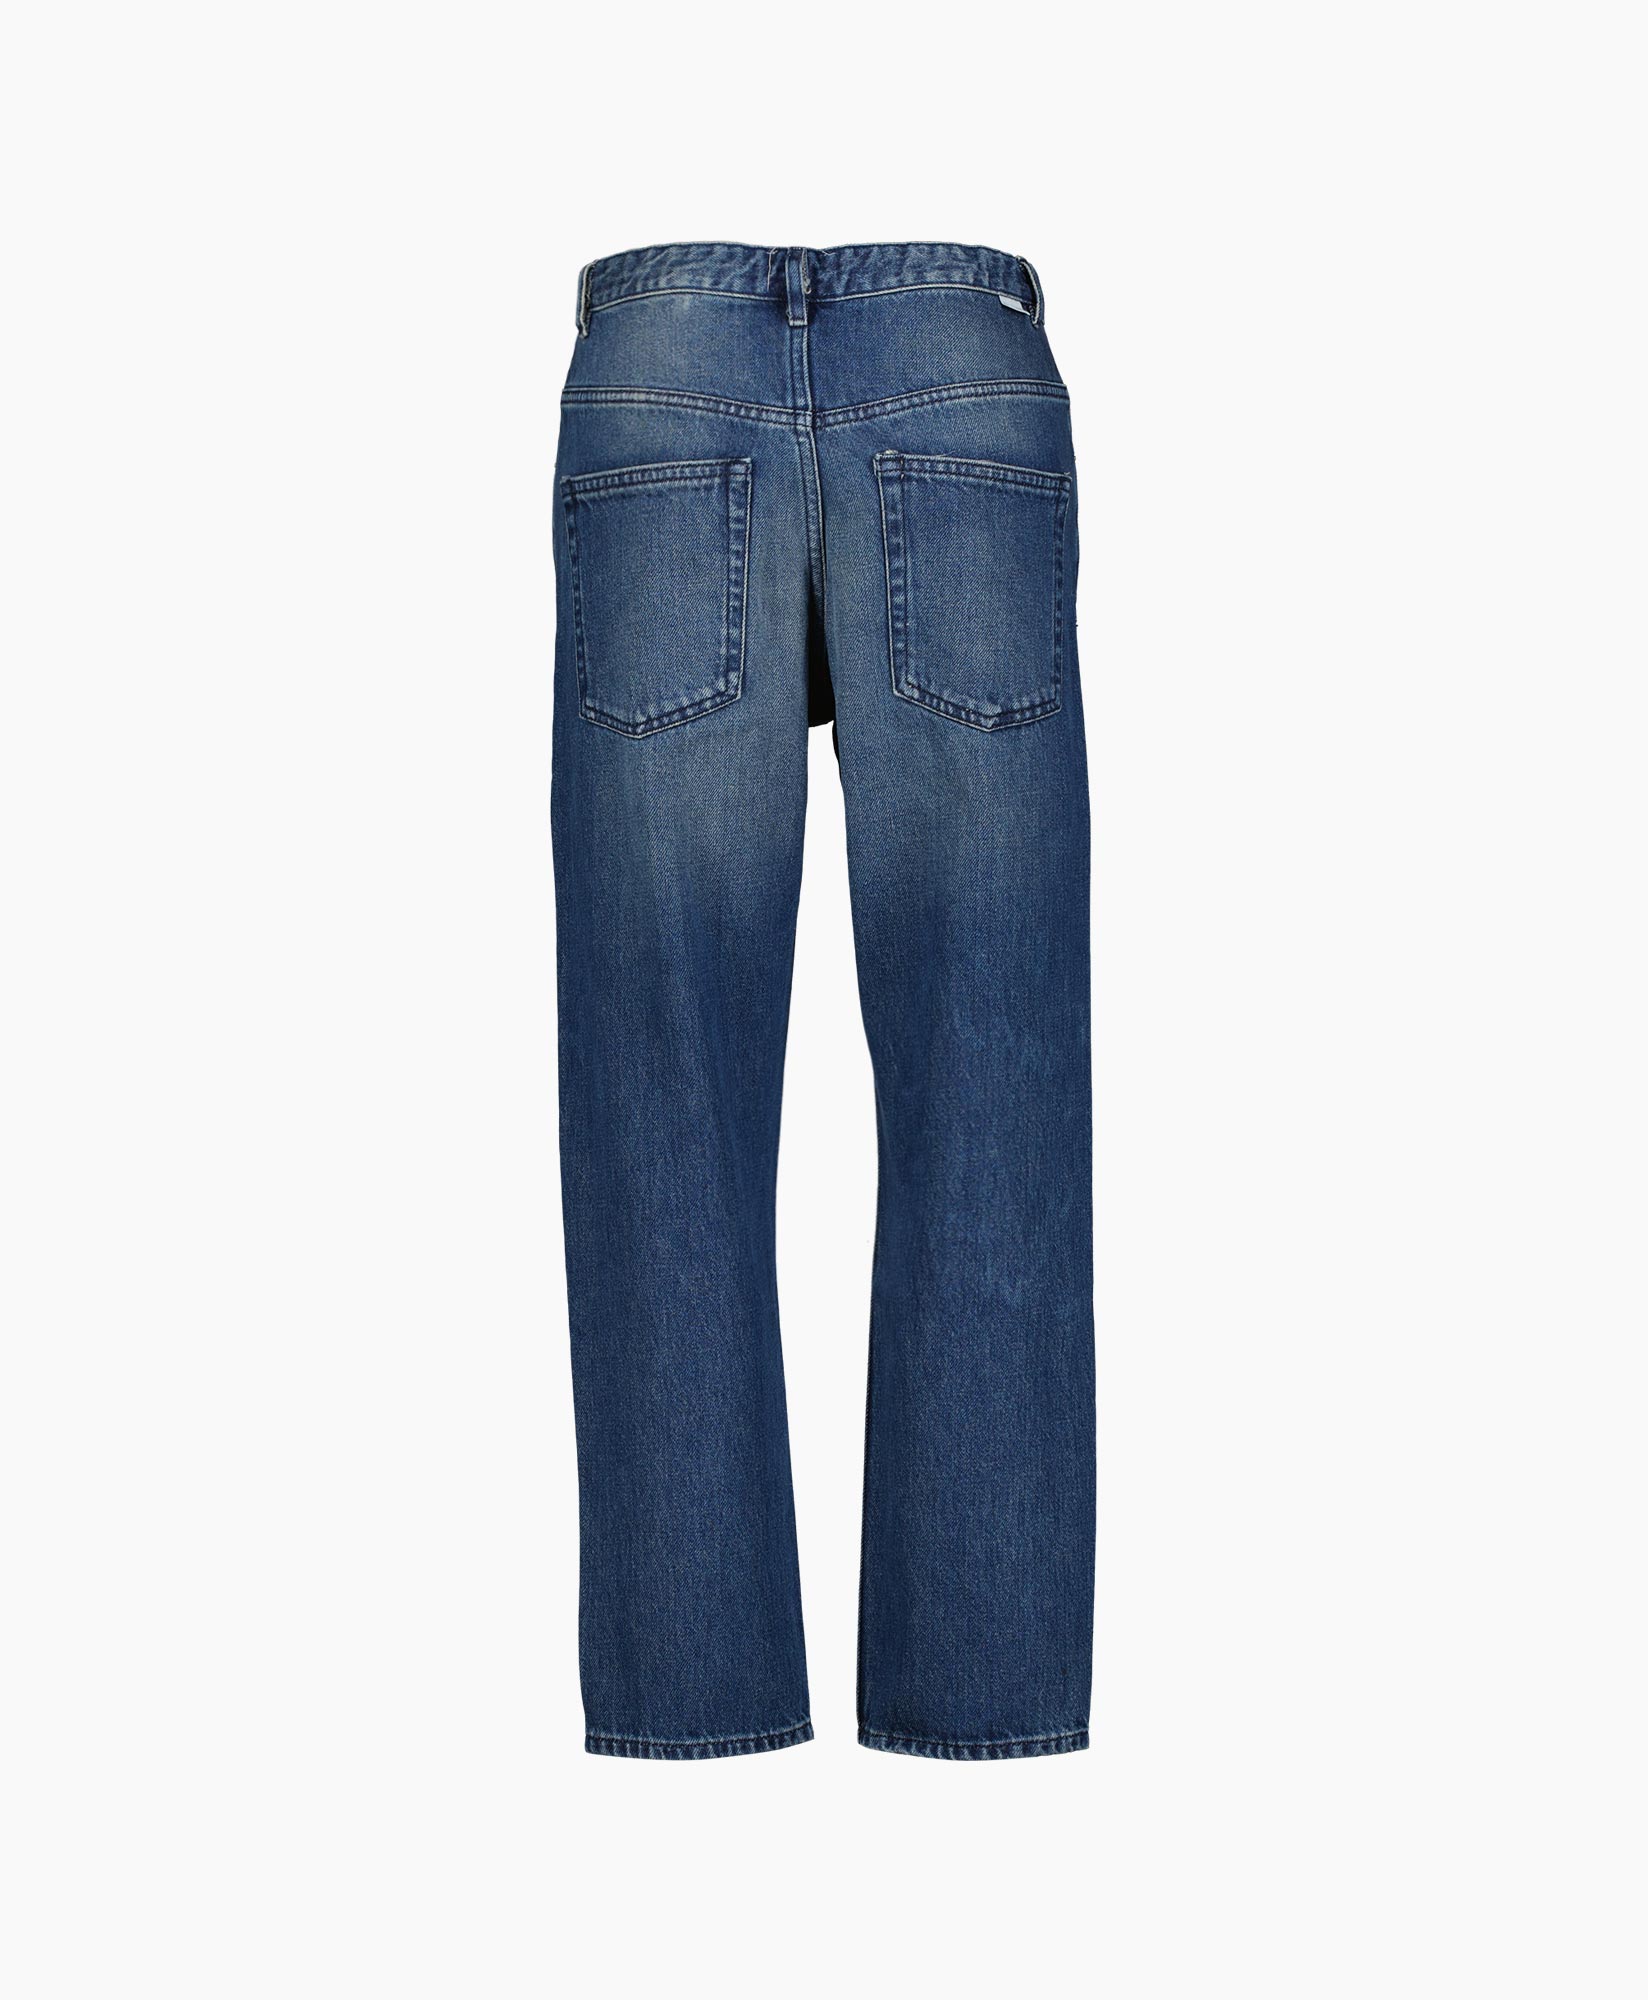 Jeans Belden-gz Blauw